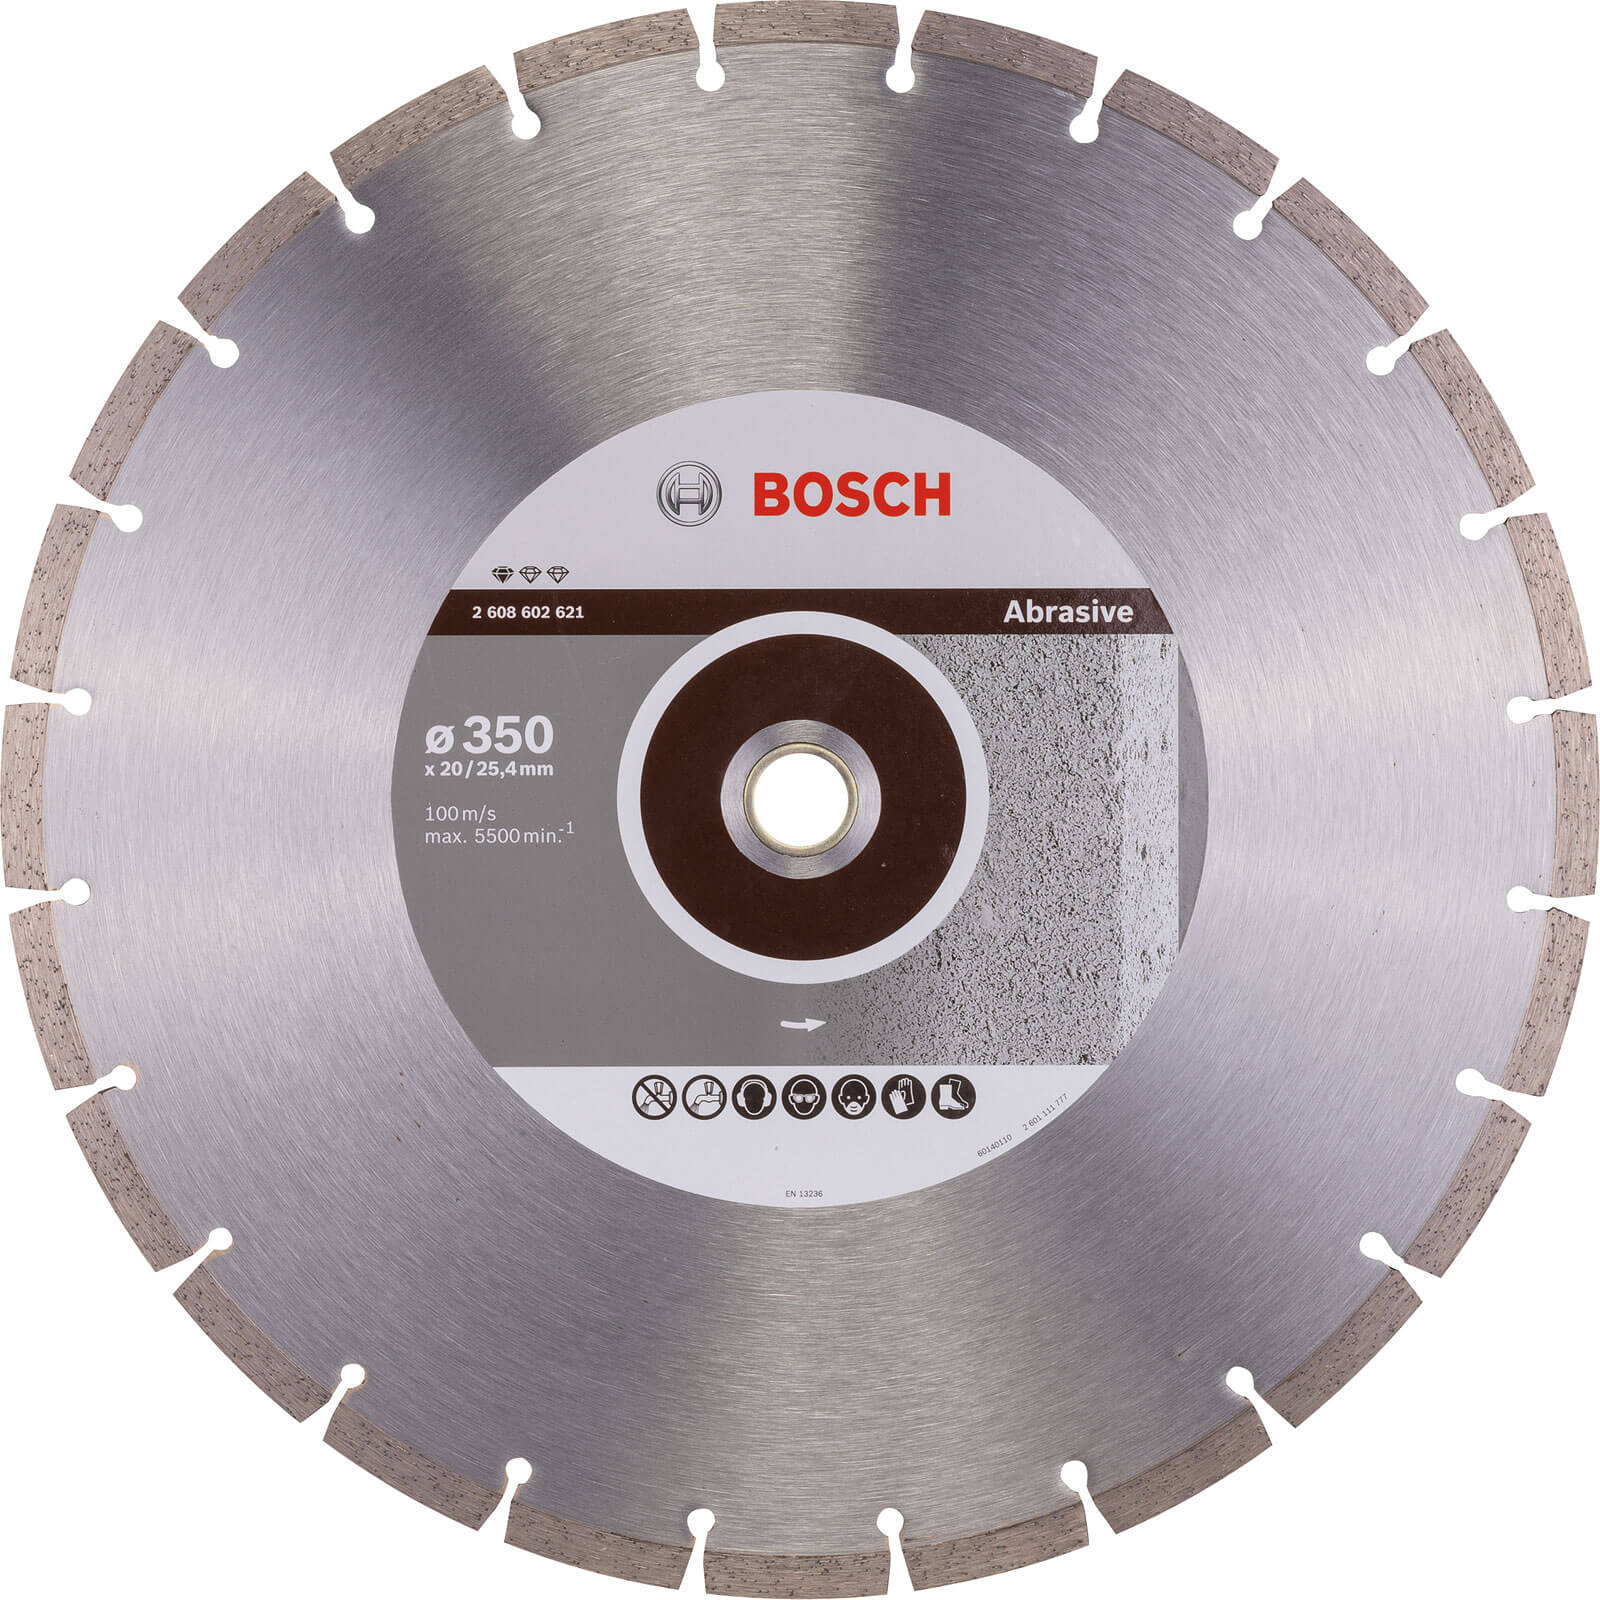 Photos - Cutting Disc Bosch Standard Diamond Disc for Abrasive Materials 350mm 2608602621 